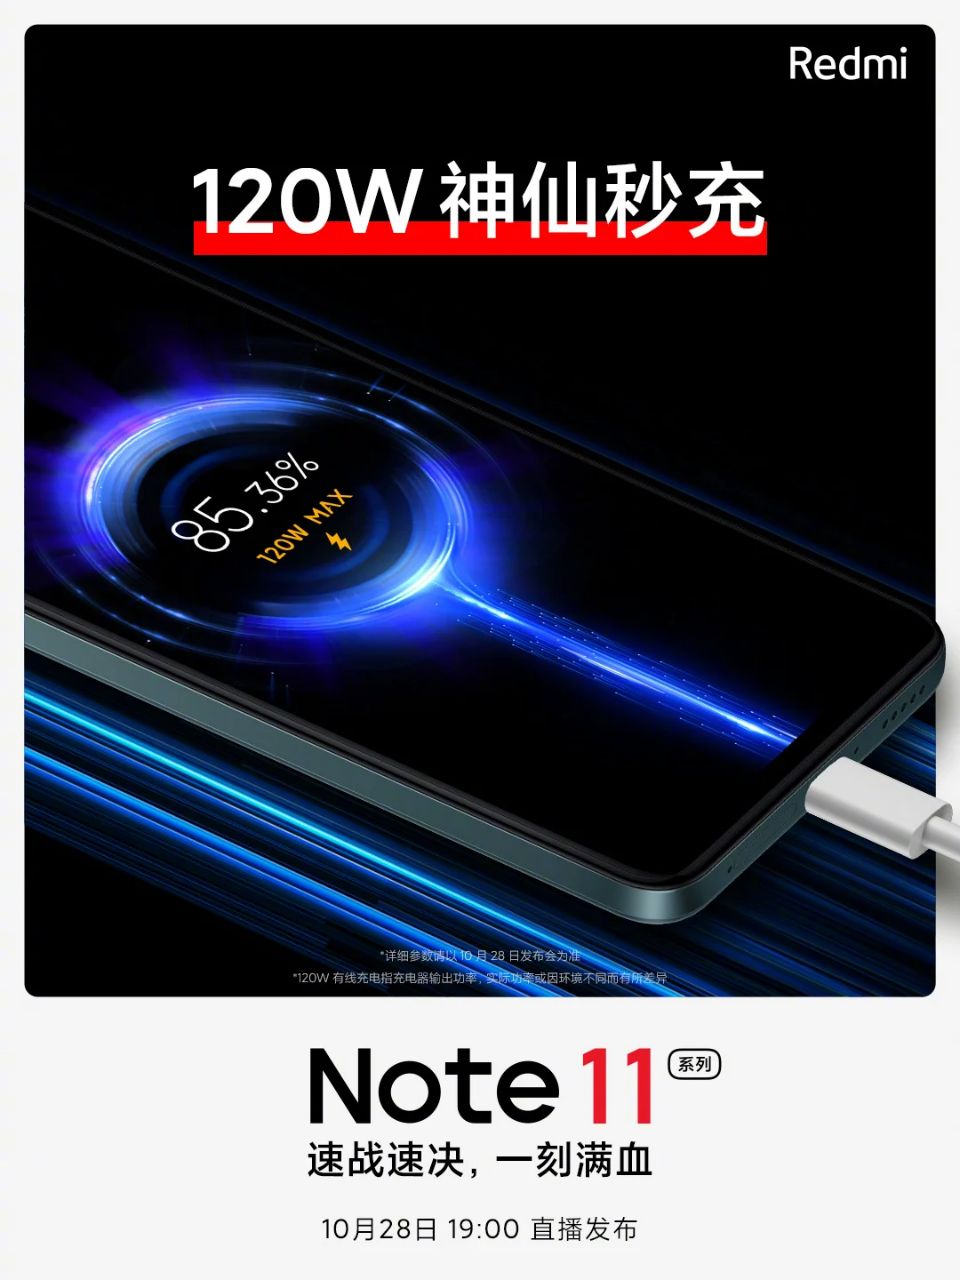 سری ردمی Note 11 شیائومی یک گوشی با شارژر ١٢٠ واتی دارد + حضور دیمنسیتی ۹۲۰